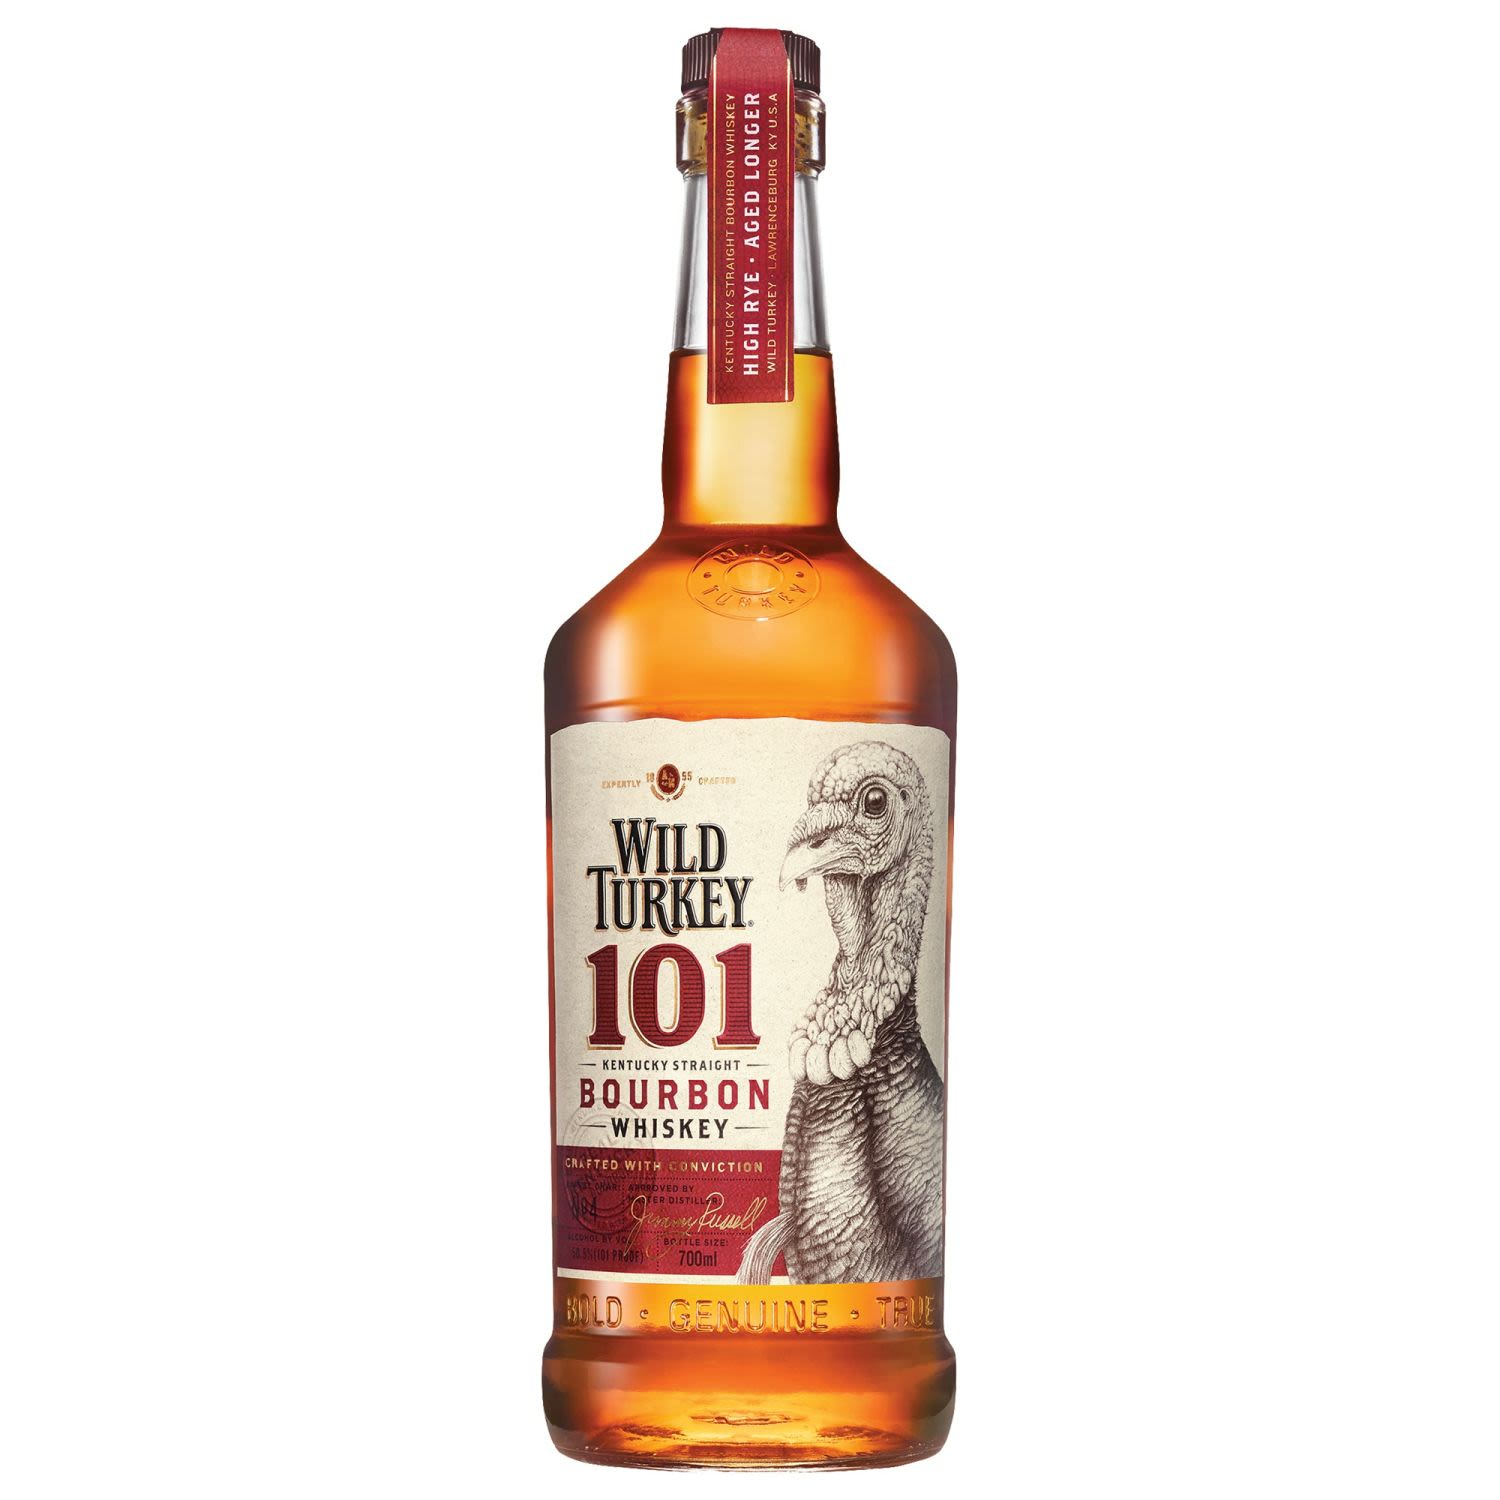 Wild Turkey 101 Proof Kentucky Straight Bourbon Whiskey 700mL Bottle